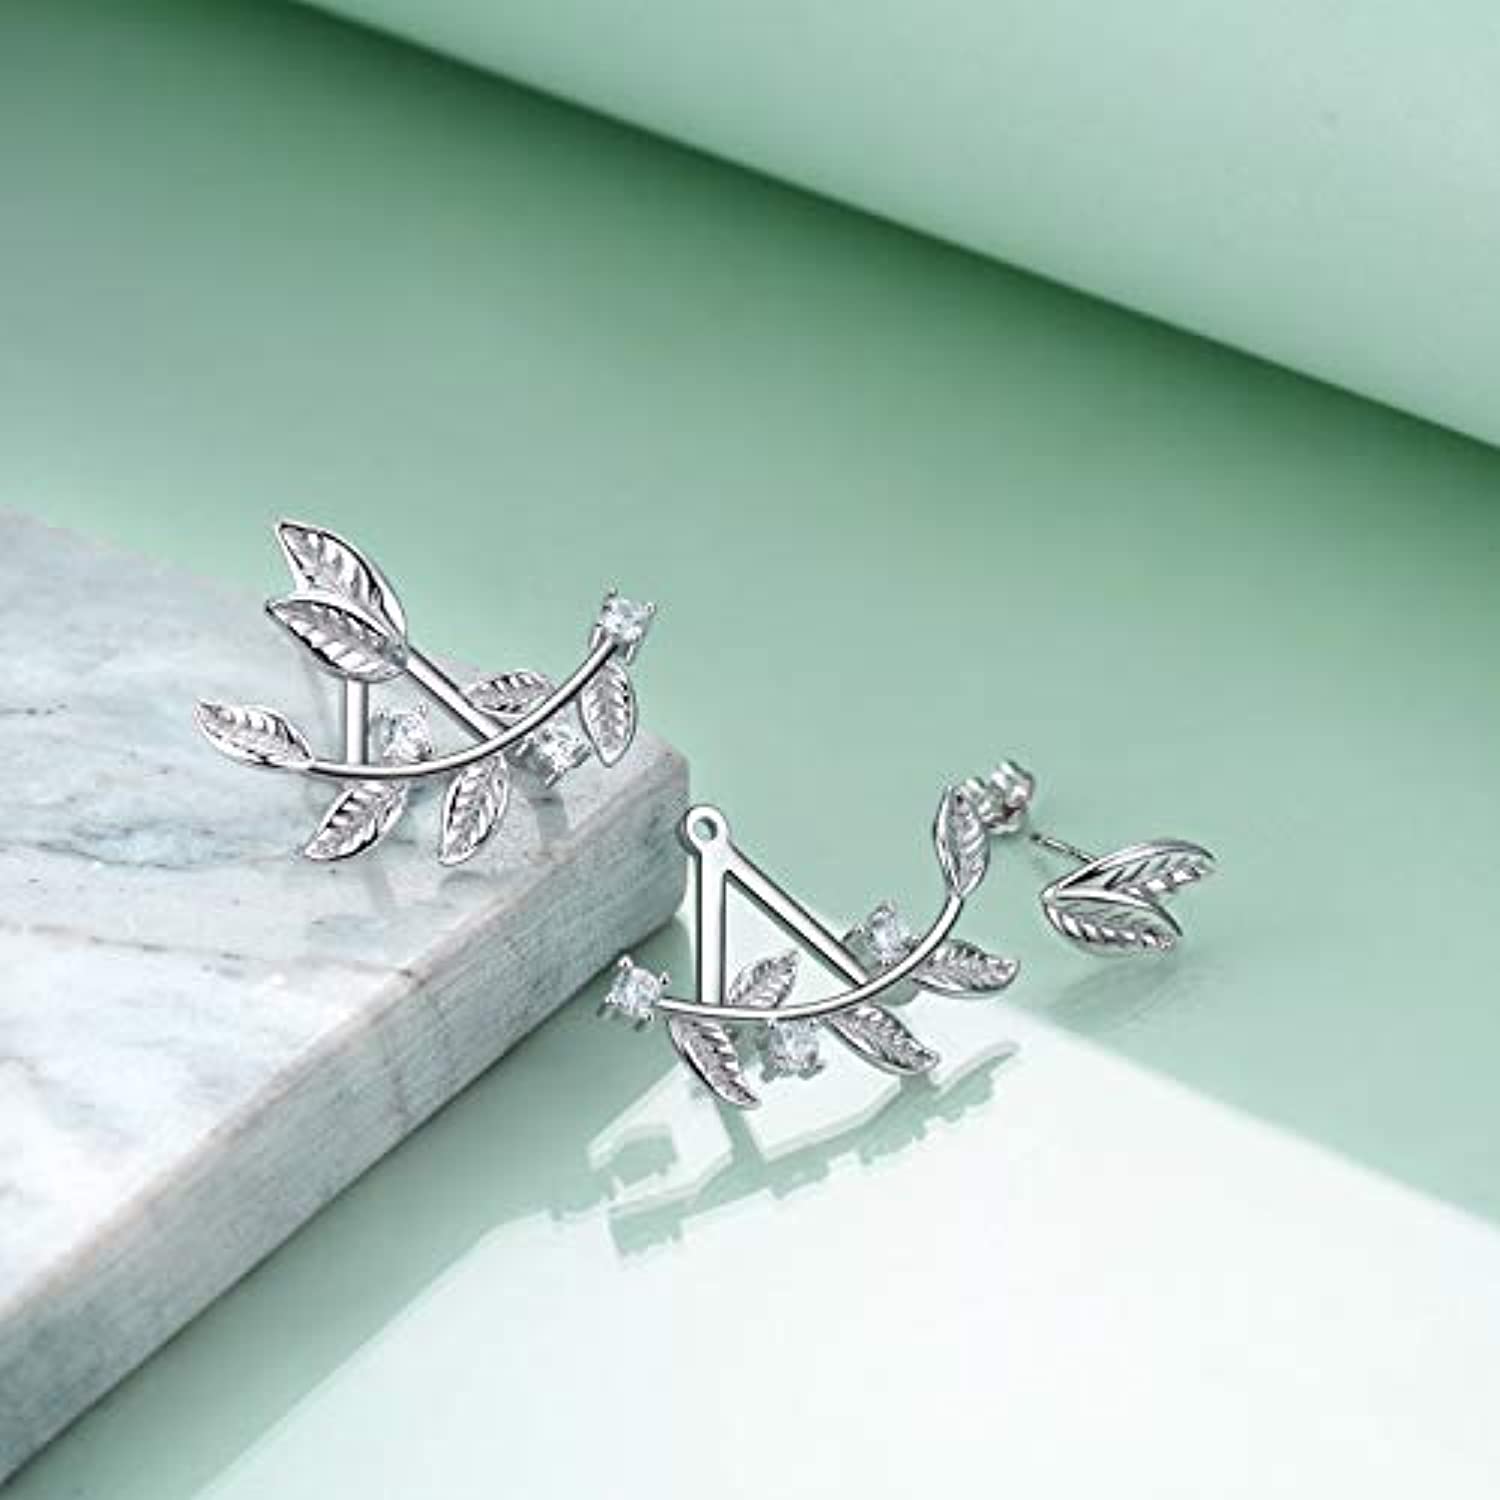 Leaf Earrings Sterling Silver Leaf Ear Crawler Stud Earrings Jewelry Studs Gifts for Women Girls